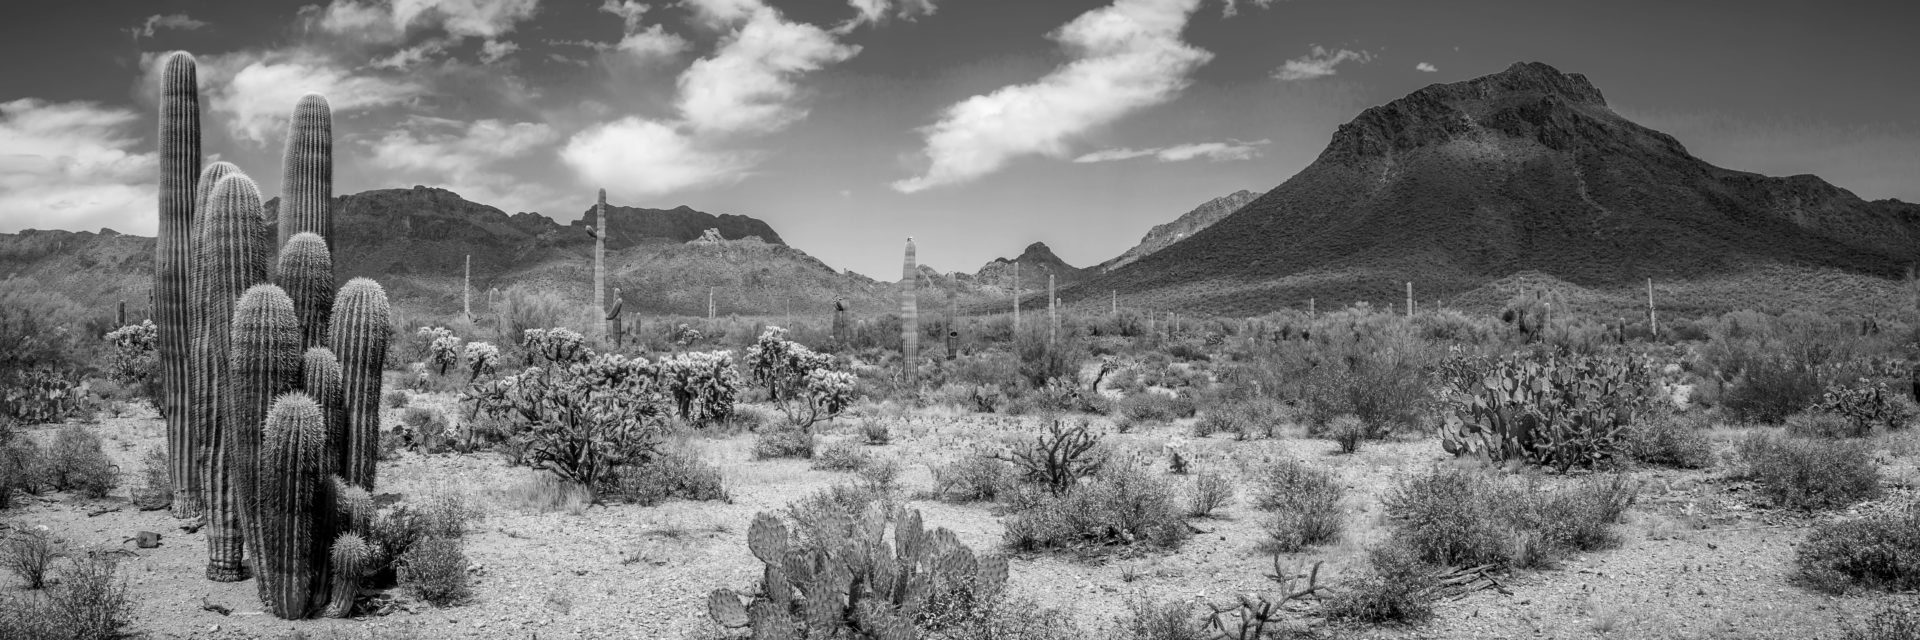 black and white desert landscape